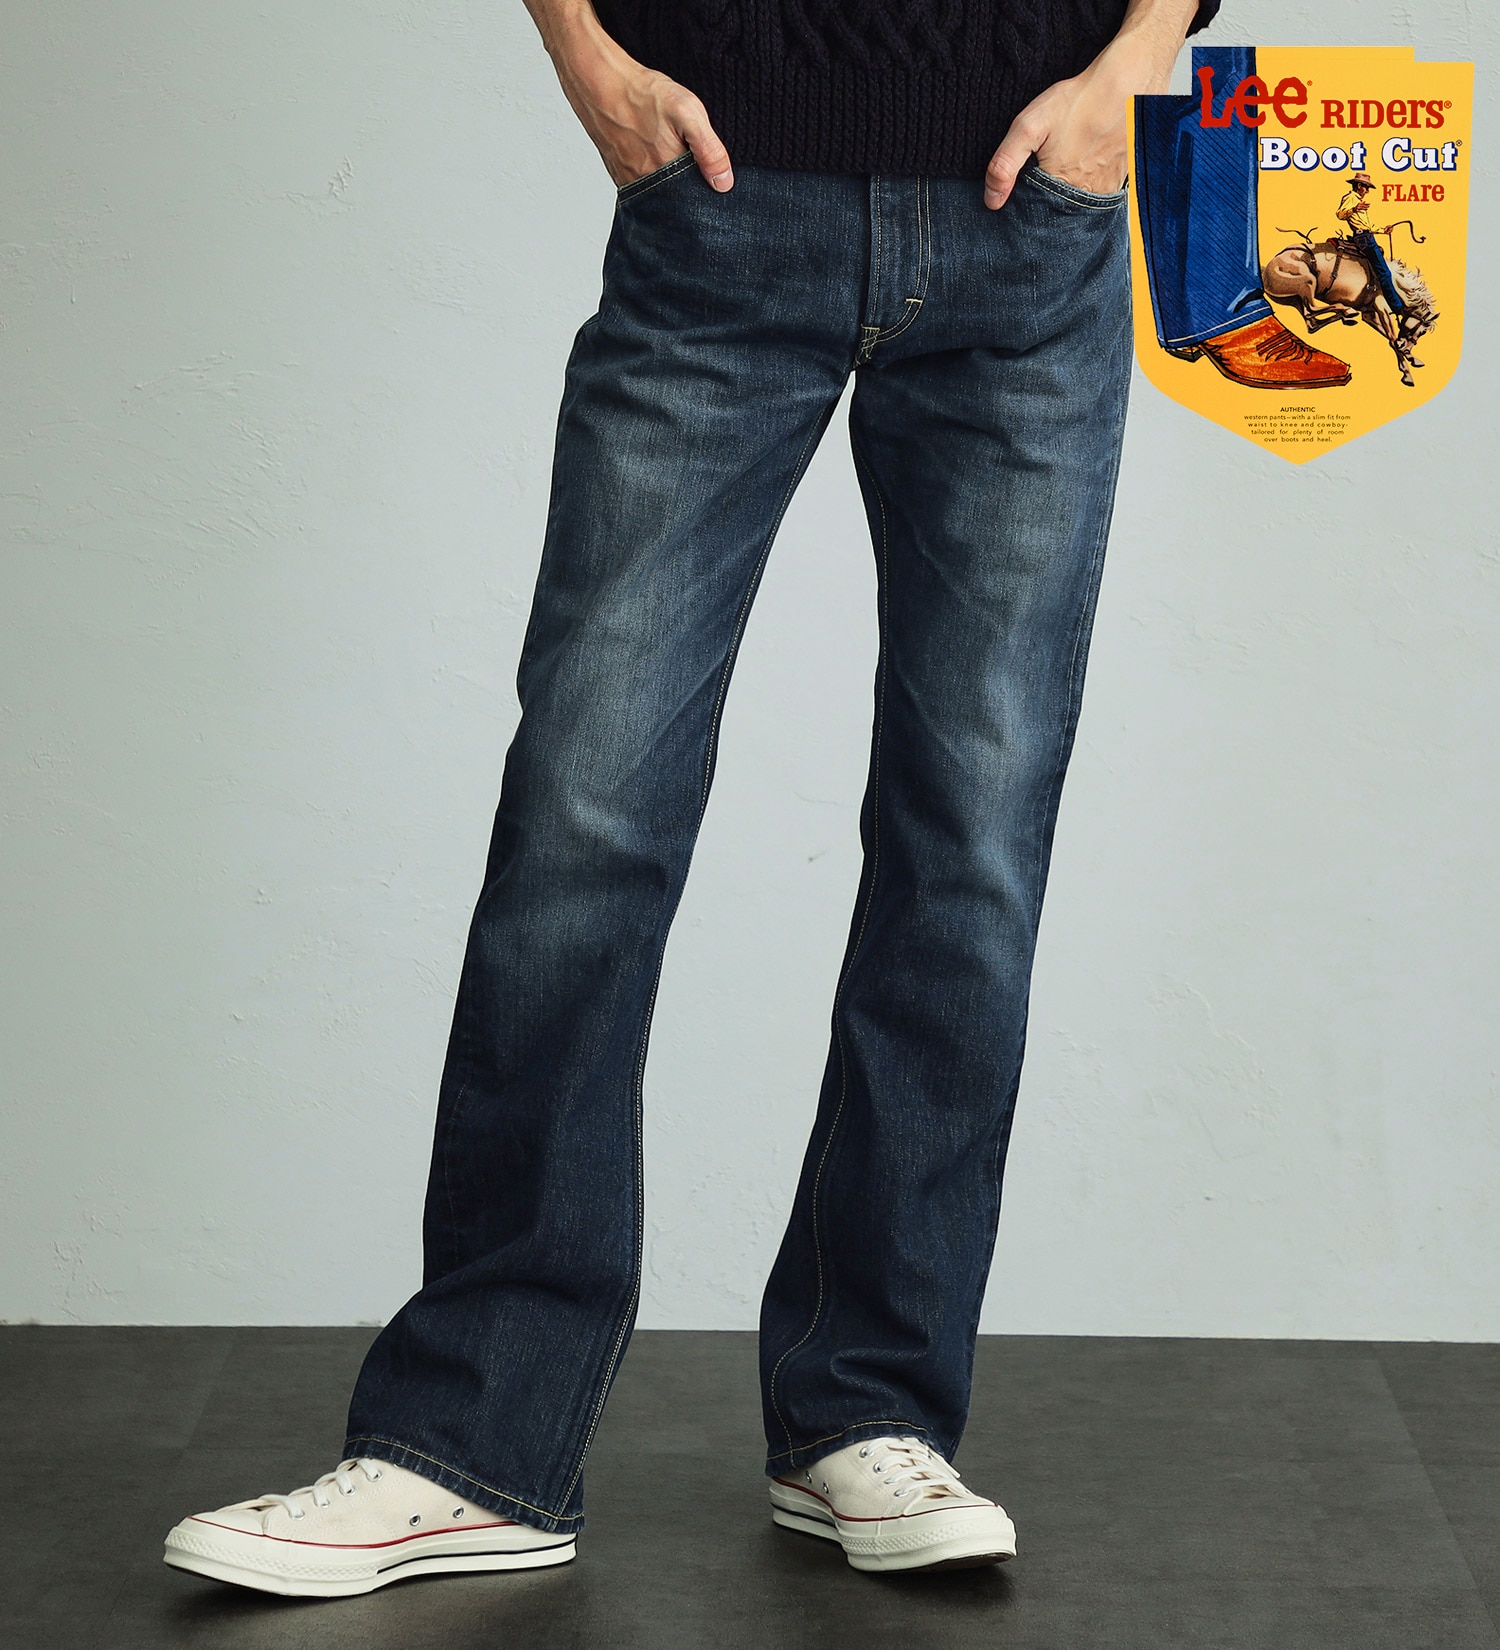 Lee(リー)の【股下長め(86cm)】AMERICAN RIDERS 102 ブーツカットジーンズ|パンツ/デニムパンツ/メンズ|濃色ブルー